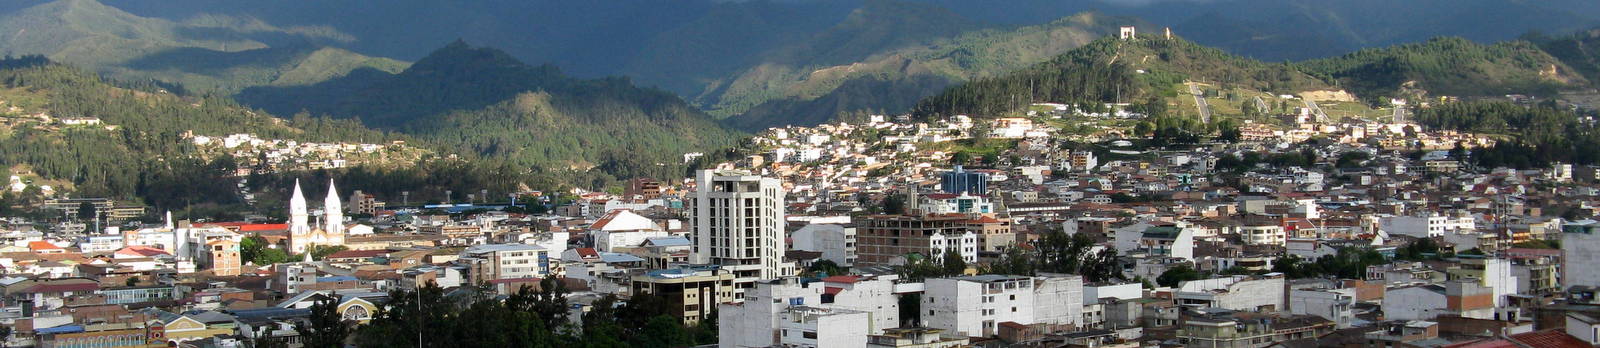 BLOG – Life in Loja and southern Ecuador – La vida en Loja y el sur del Ecuador